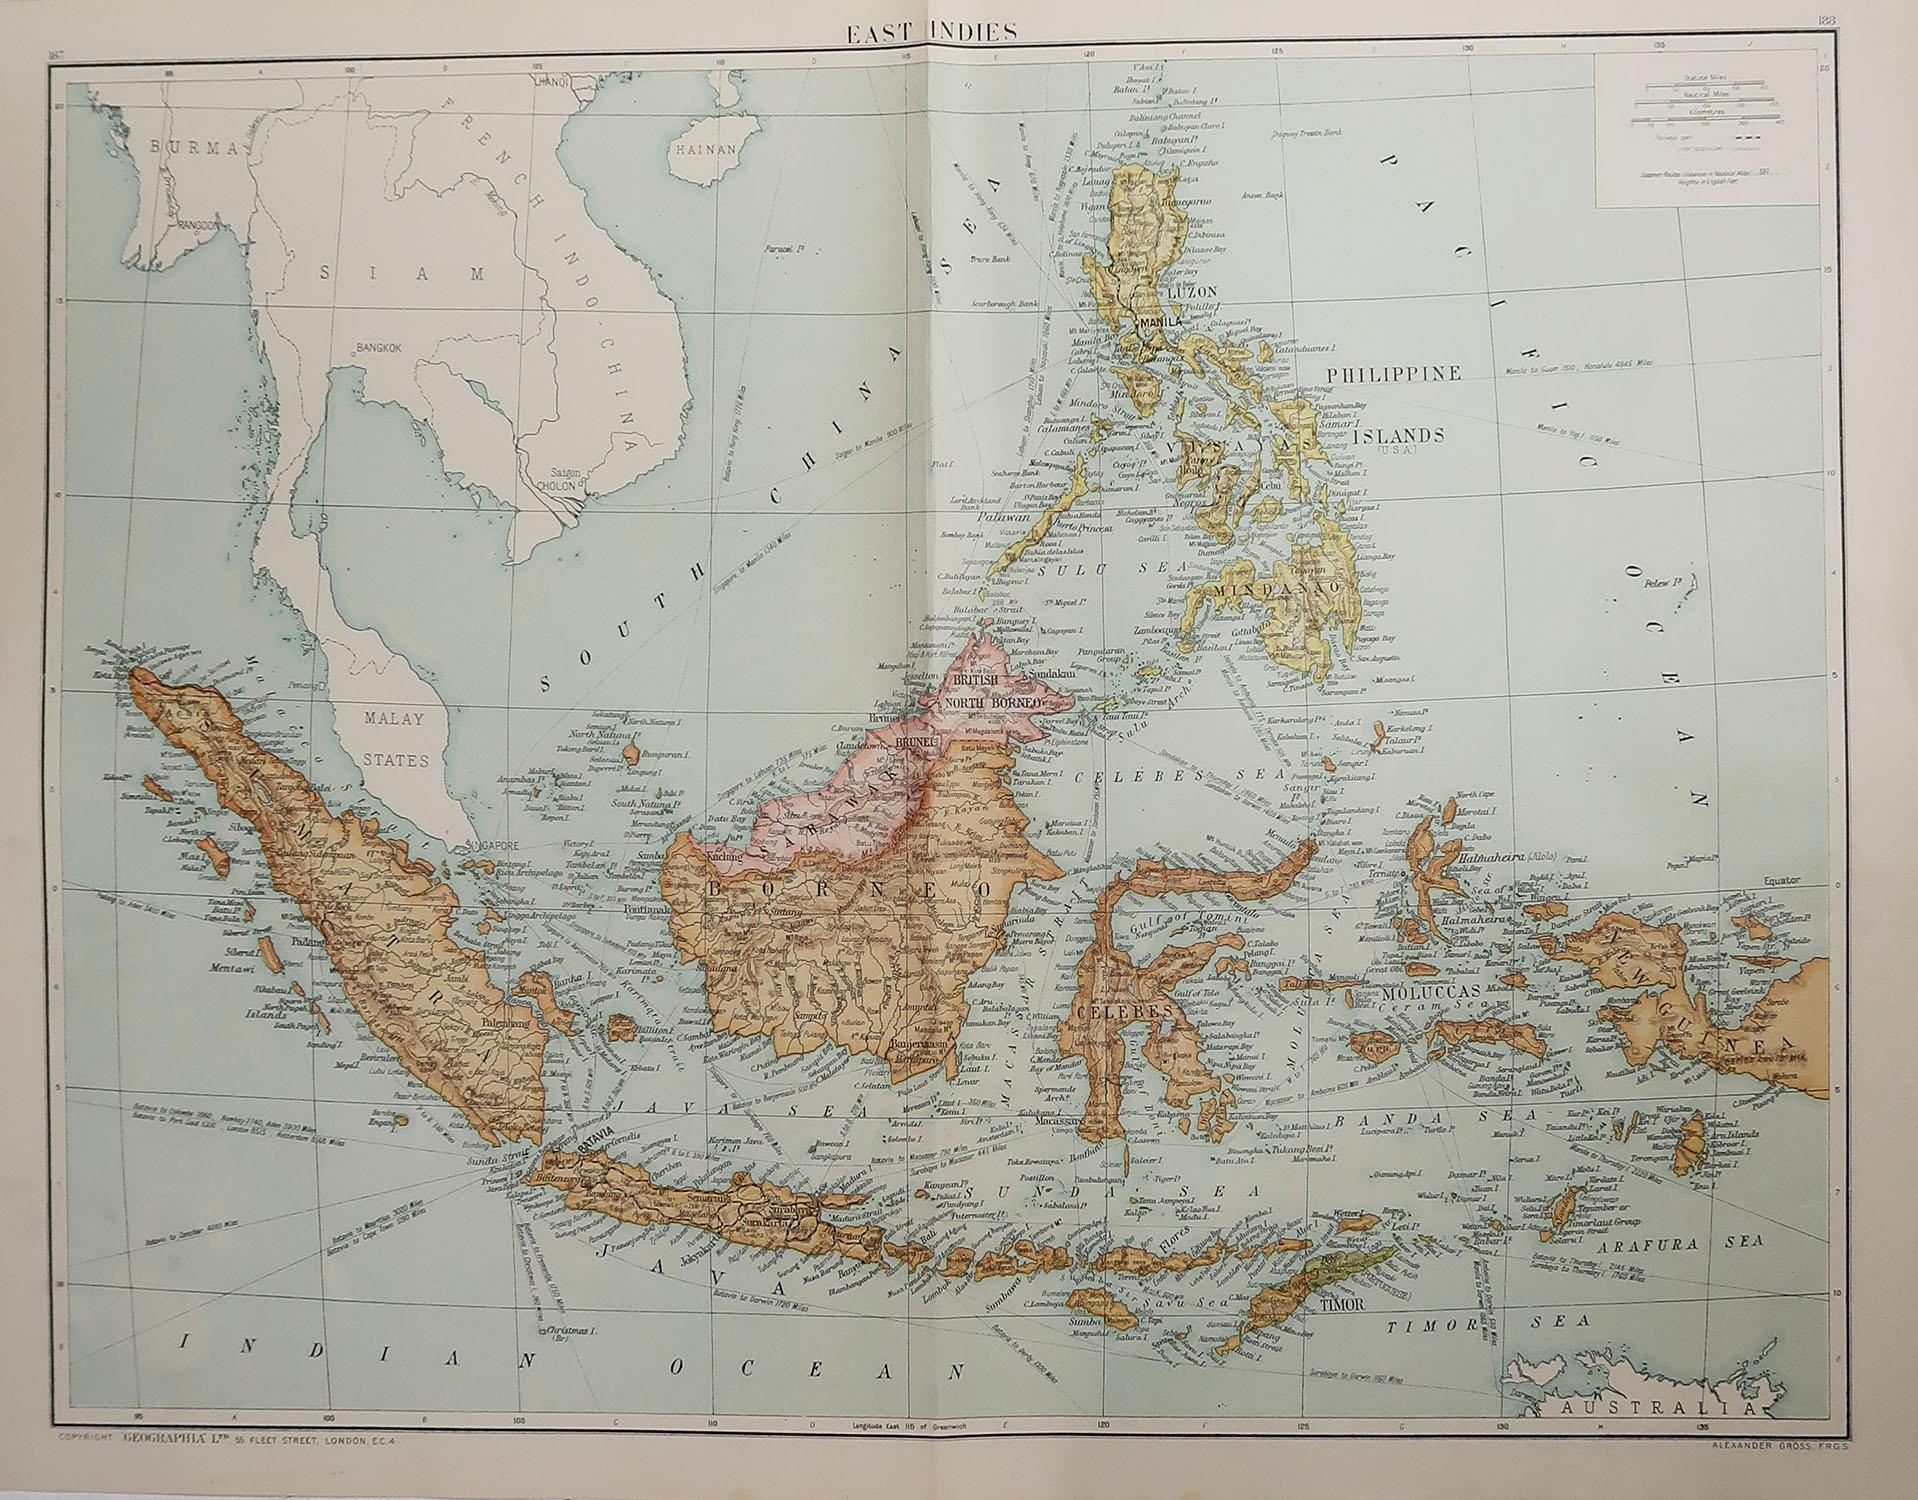 Grande carte de l'Asie du Sud-Est

Couleur originale. 

Bon état 

Publié par Alexander Gross

Non encadré.








 